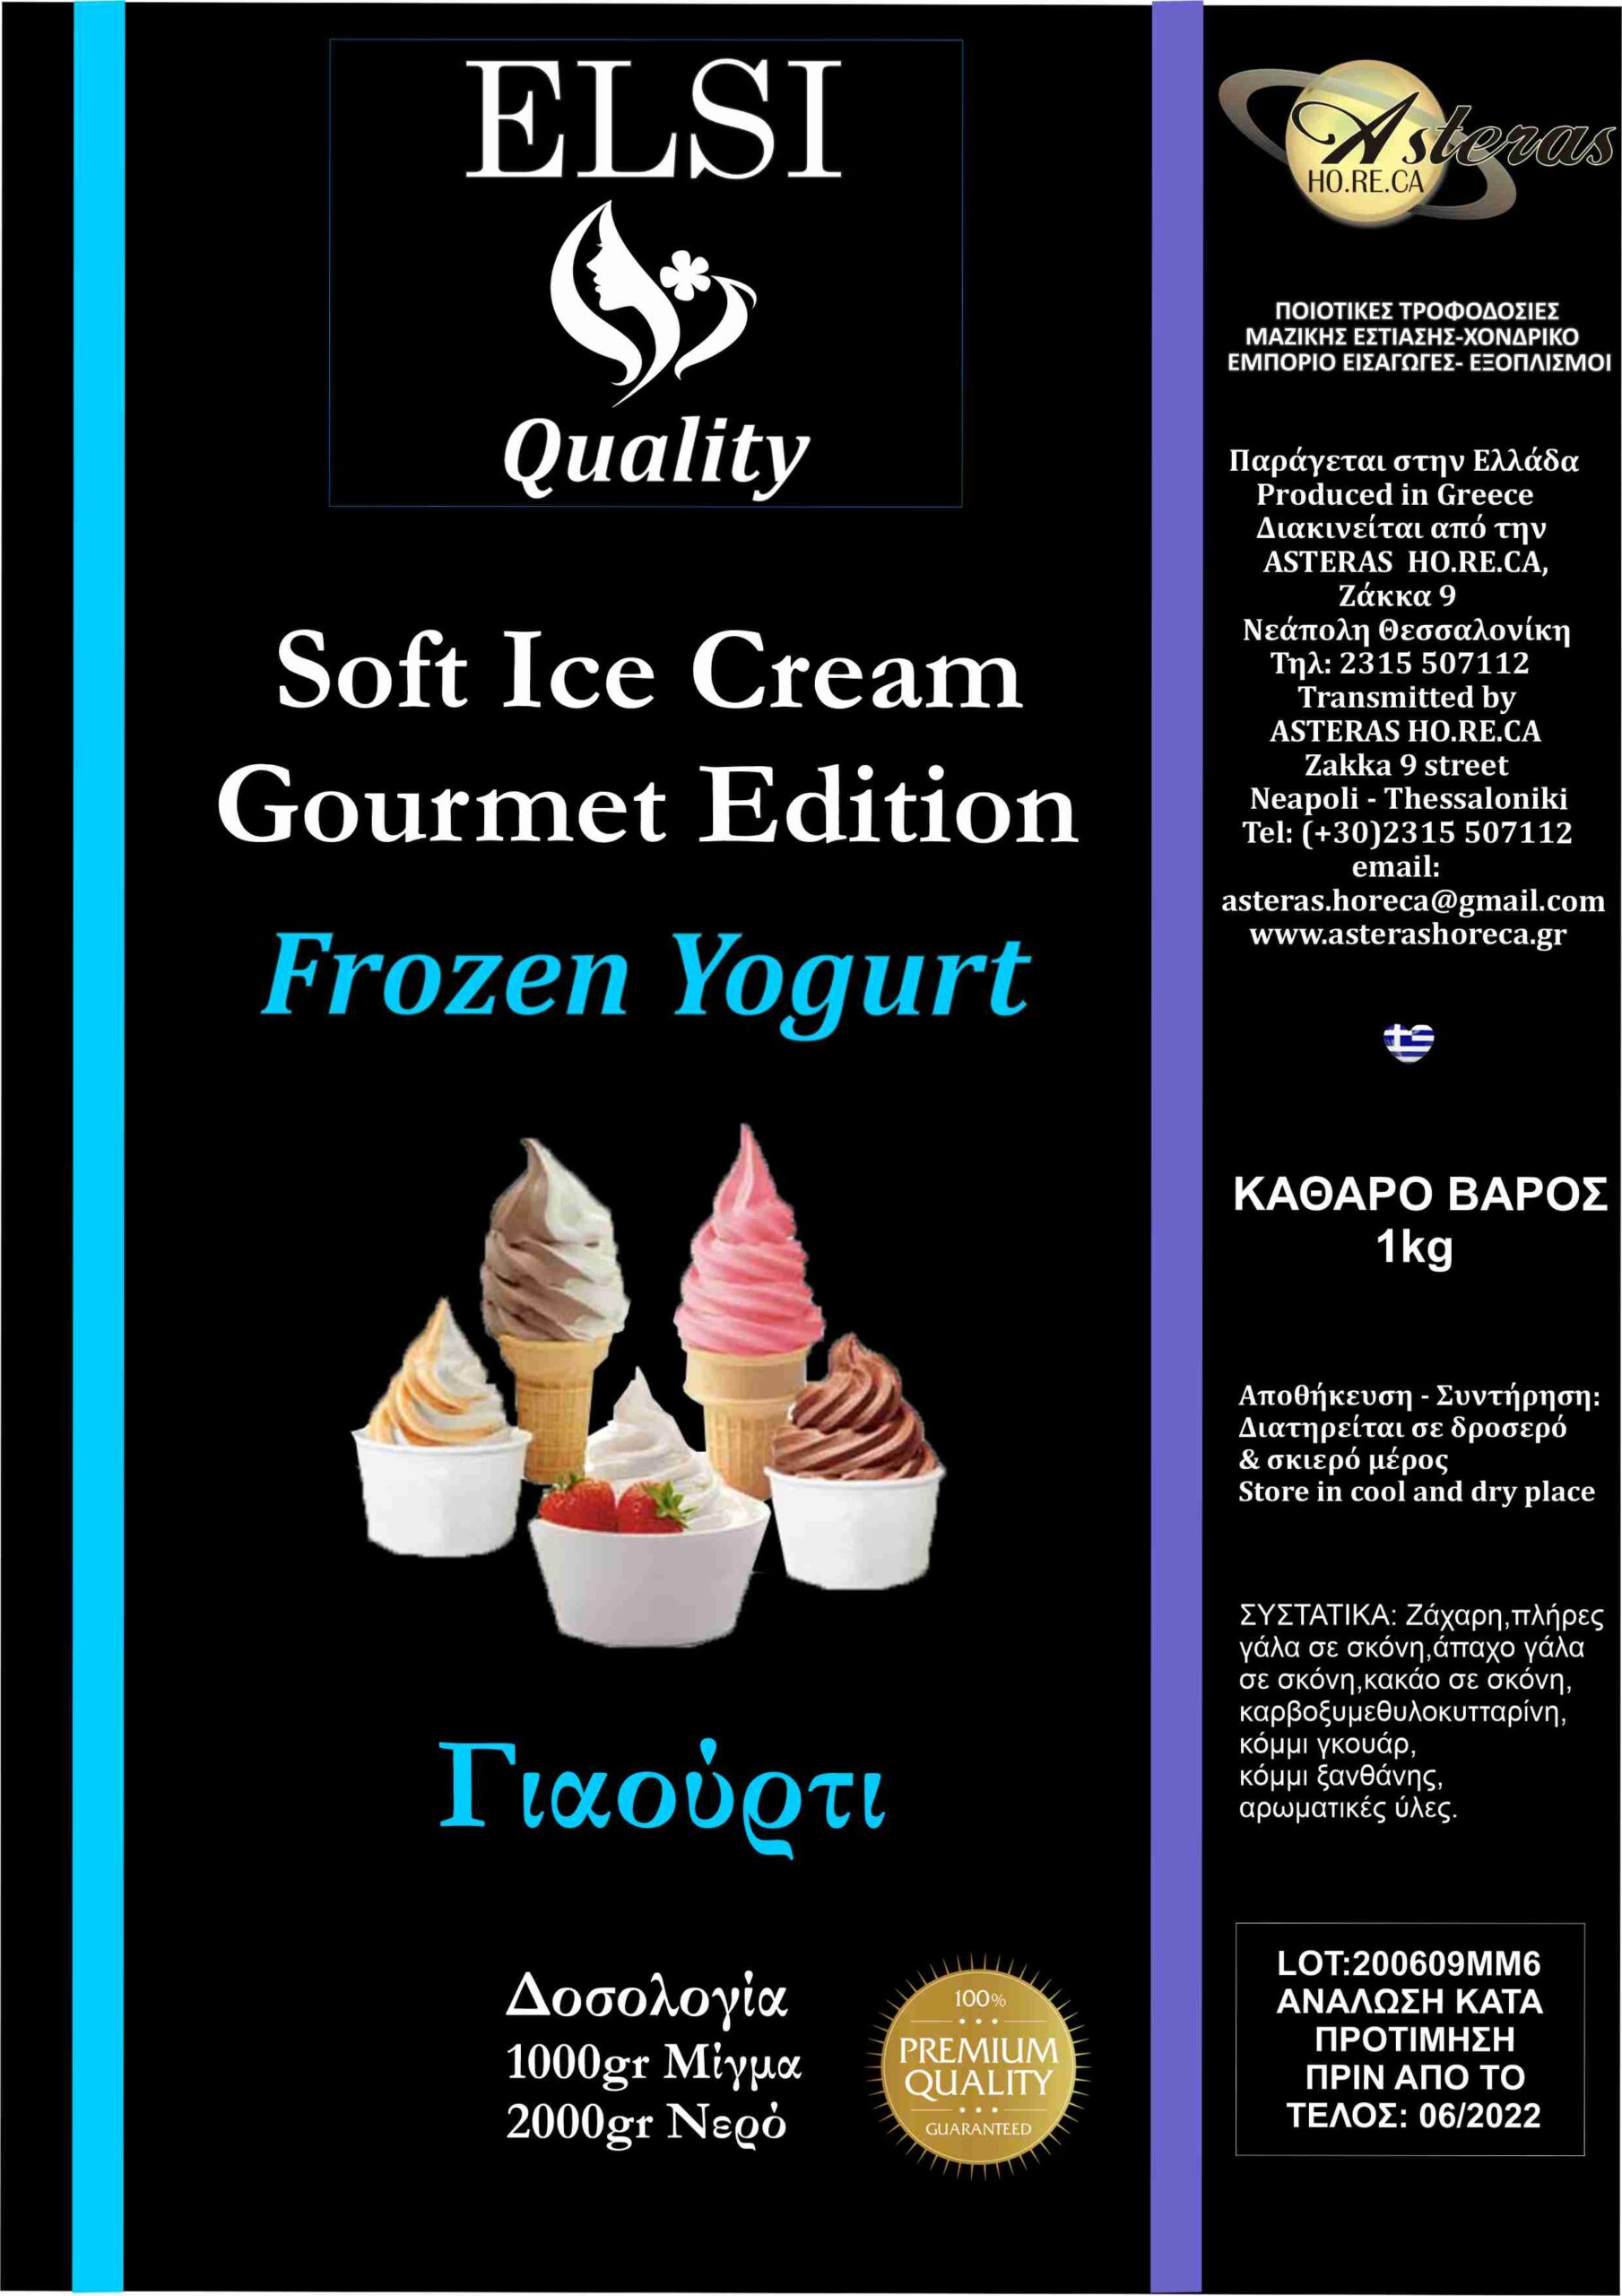 Μείγμα Frozen Yoghurt